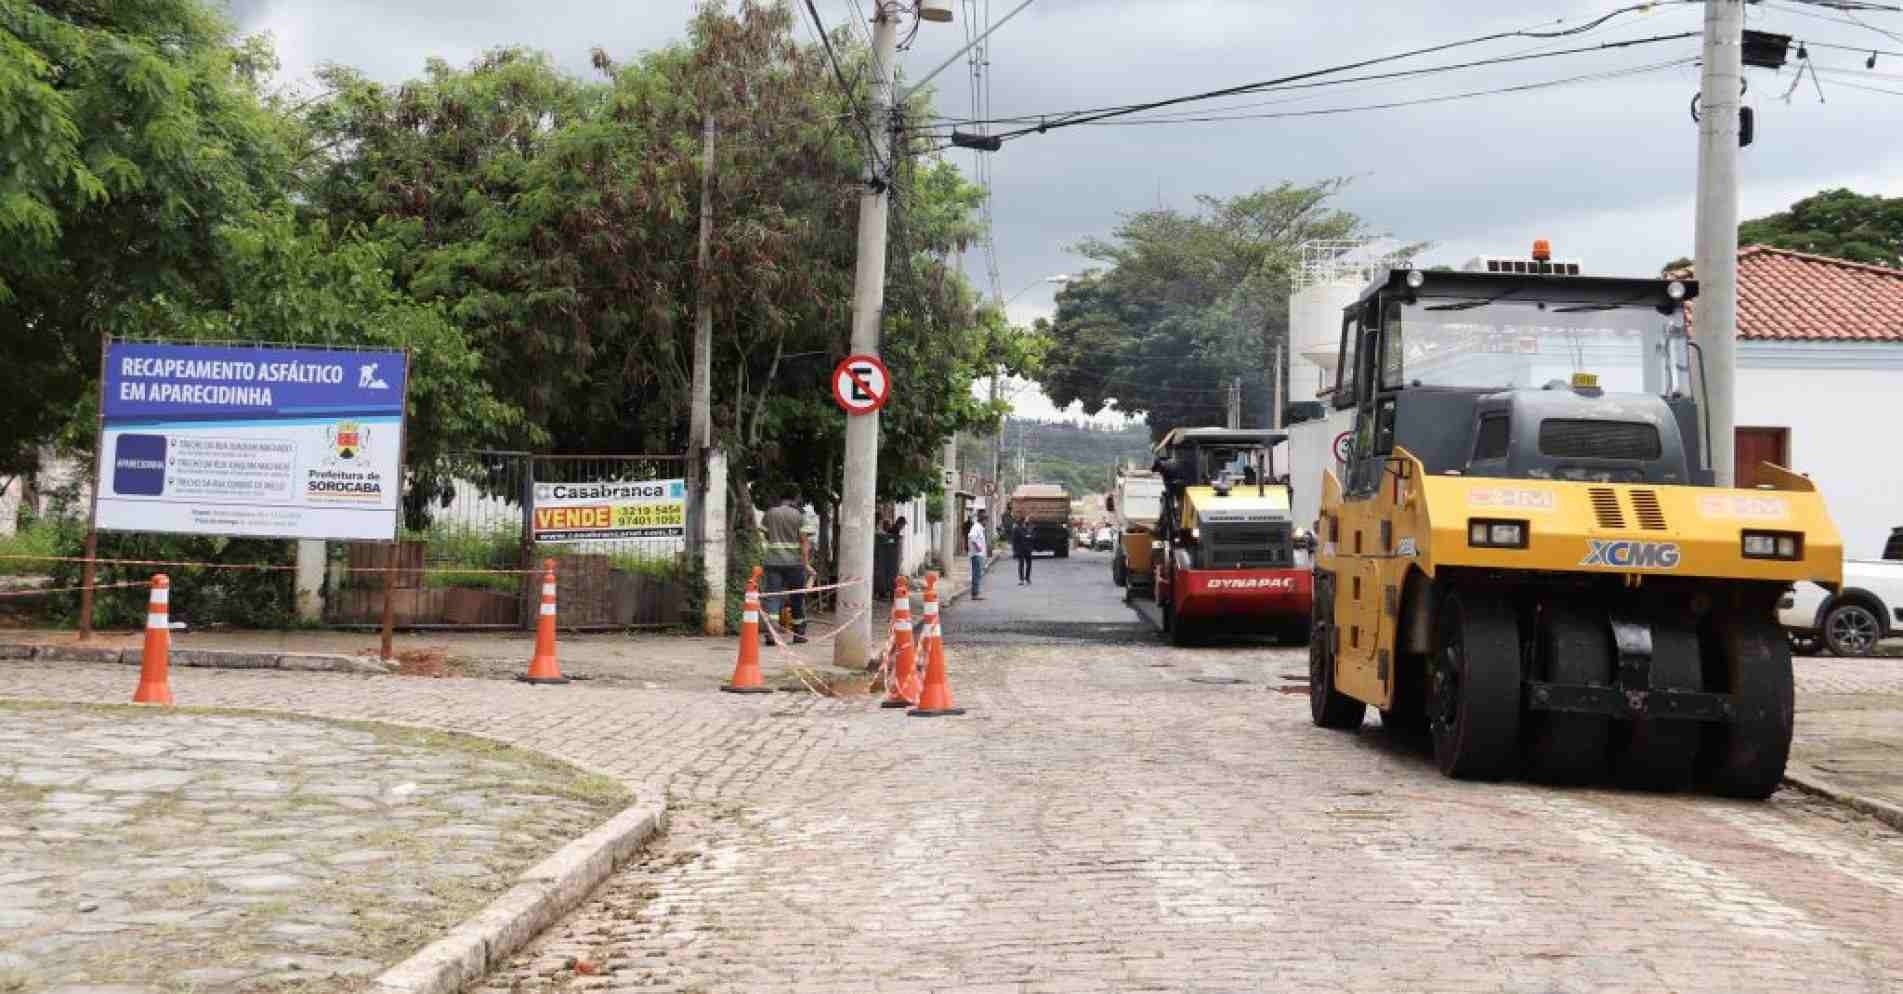 Prefeitura de Sorocaba inicia obras de recapeamento asfáltico em Aparecidinha.